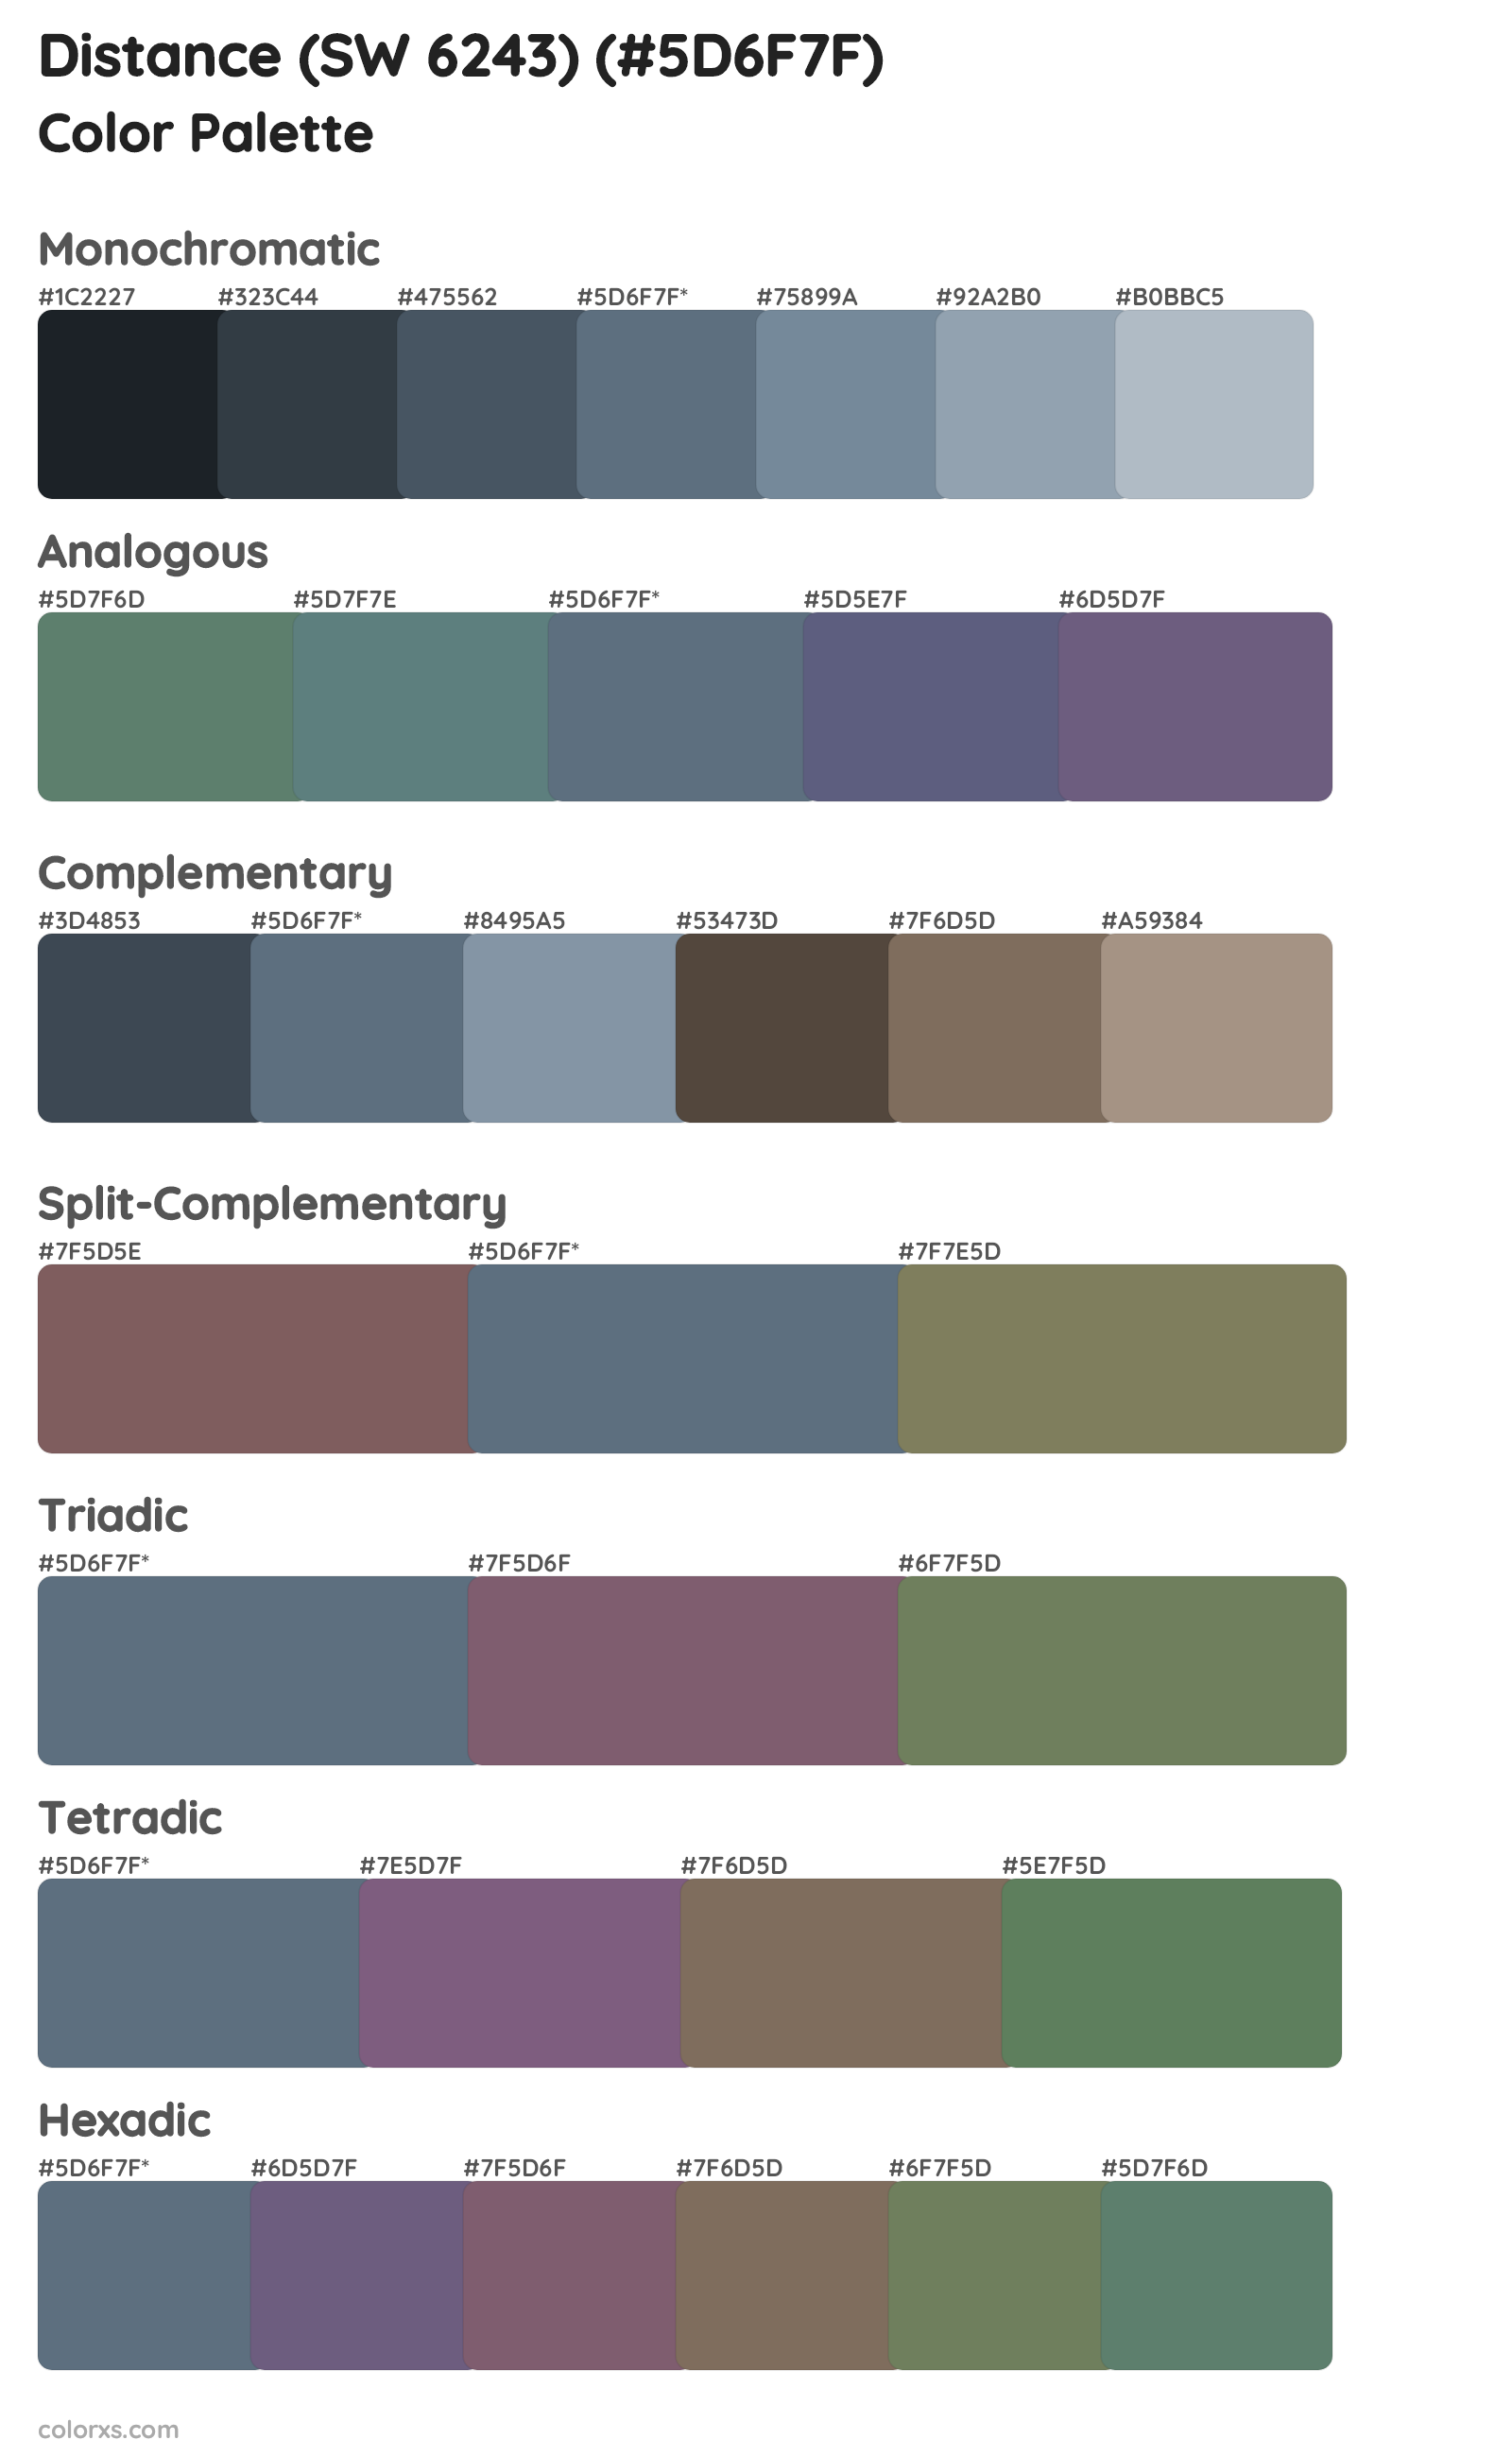 Distance (SW 6243) Color Scheme Palettes